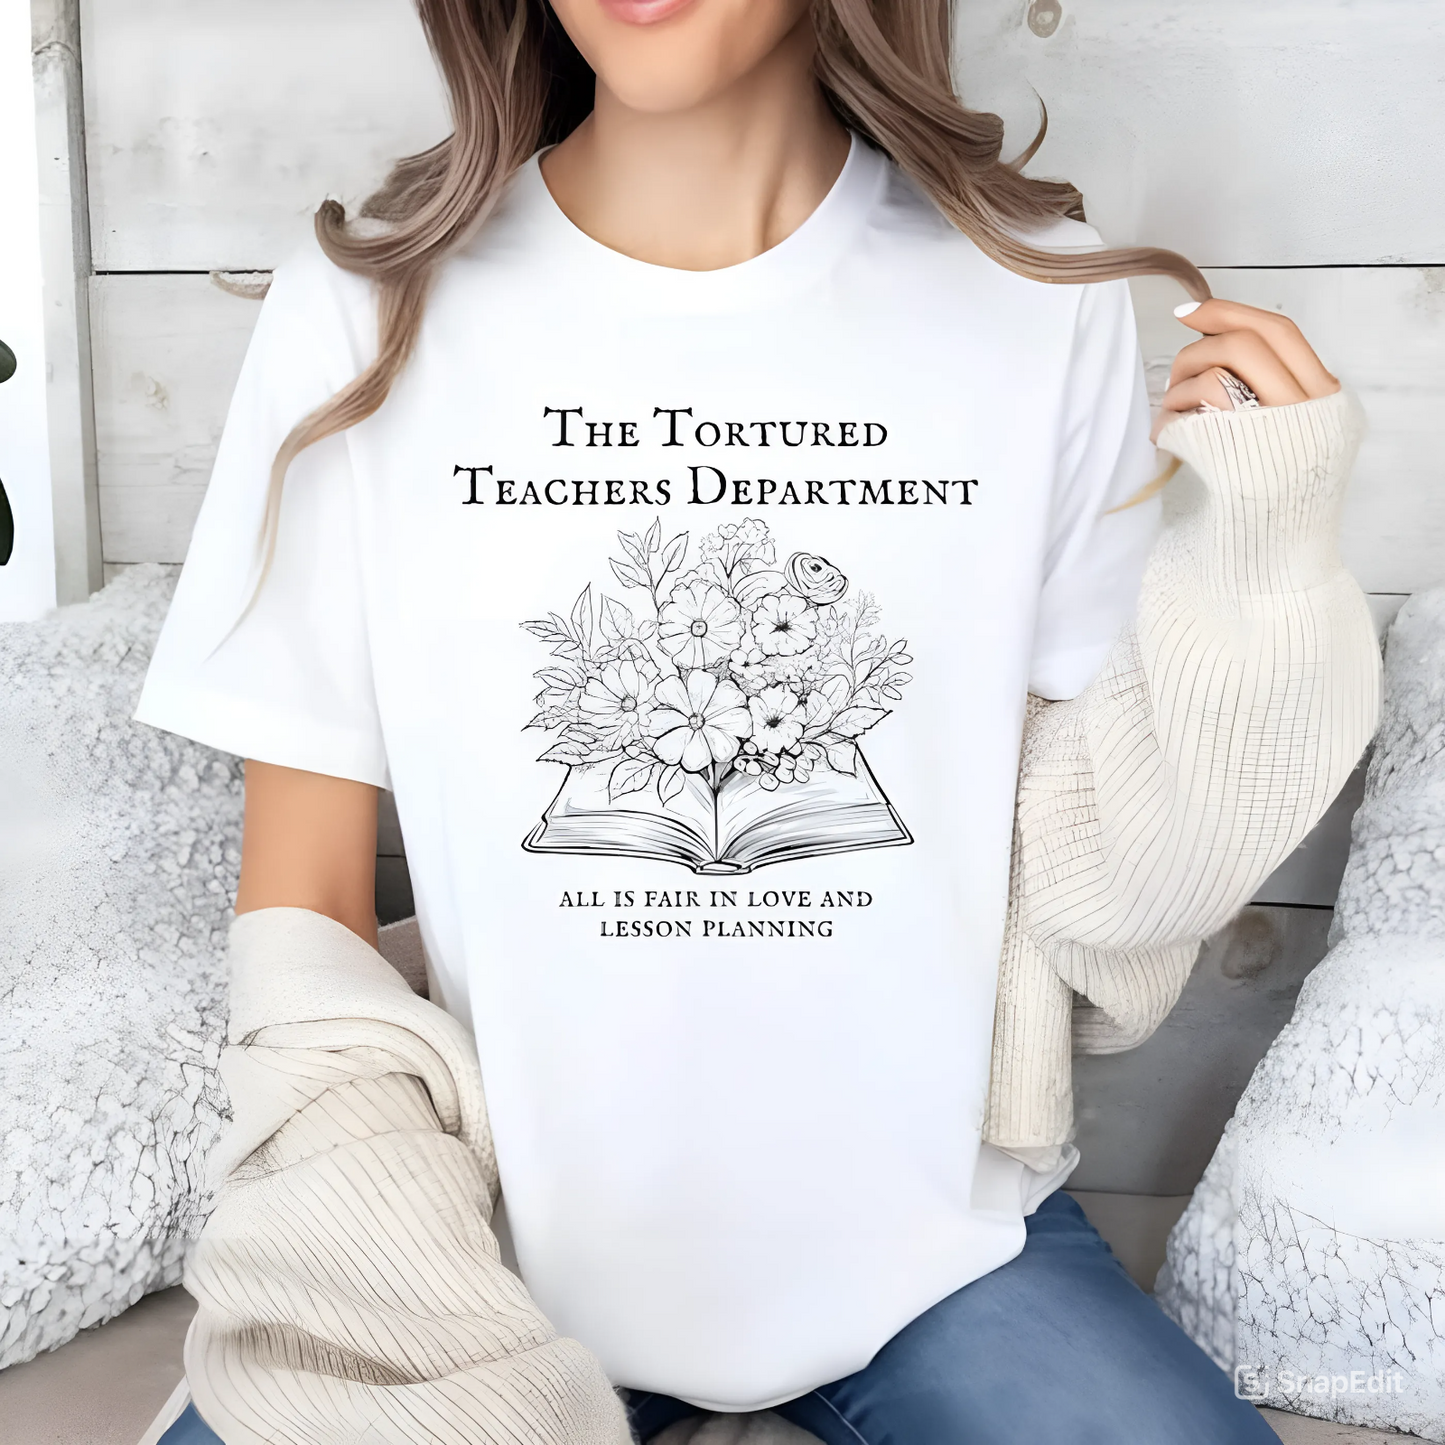 Tortured Teachers Department - Lustiges T-Shirt für Pädagogen